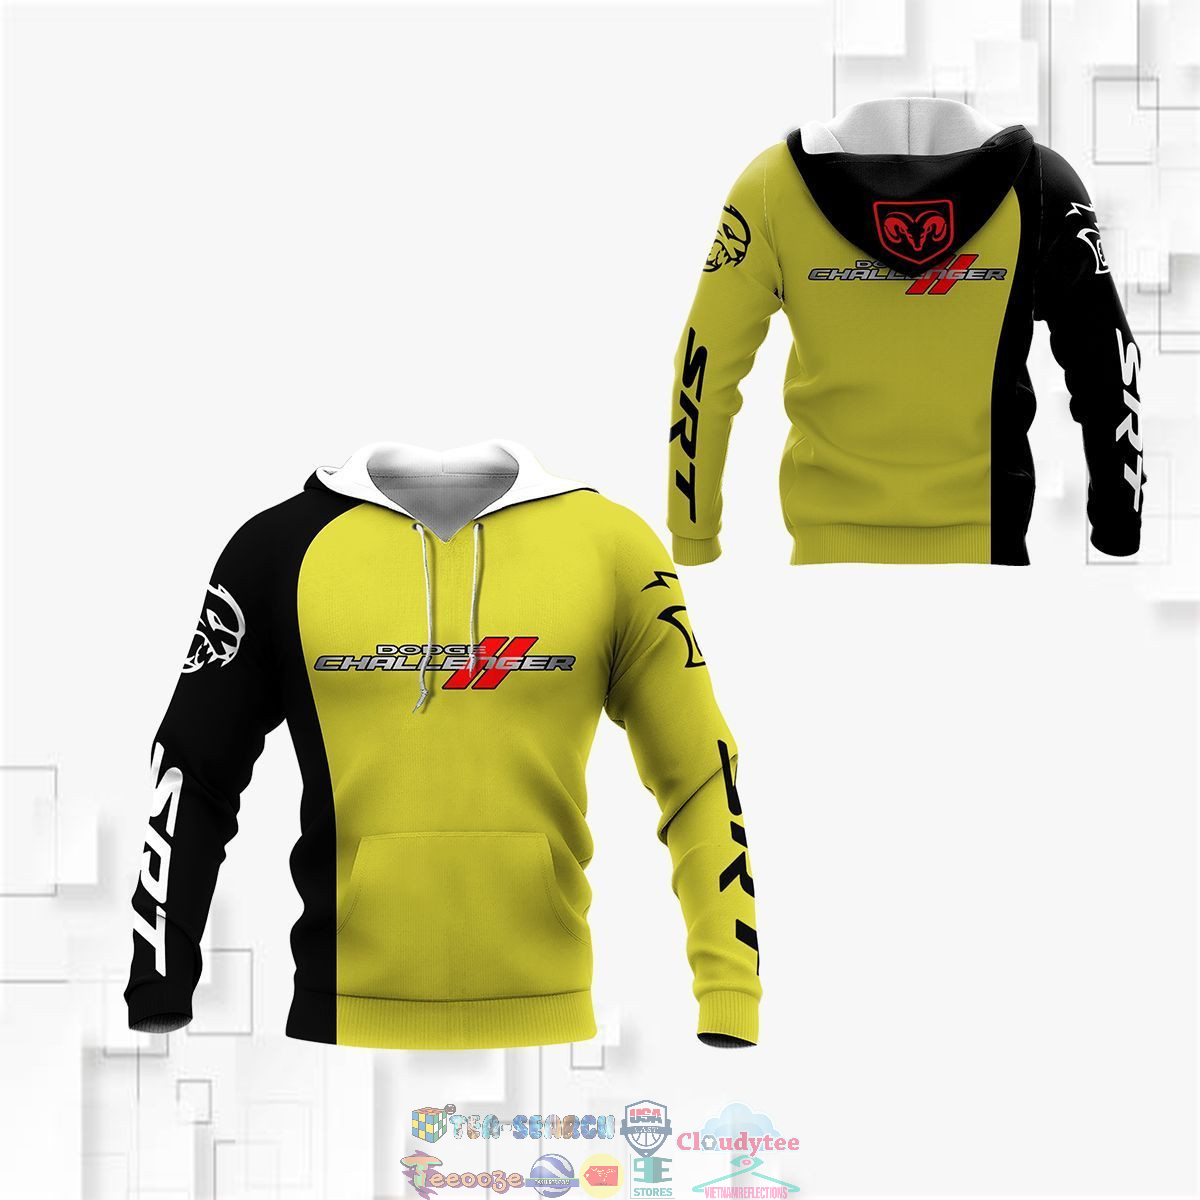 Dodge Challenger ver 12 3D hoodie and t-shirt – Saleoff